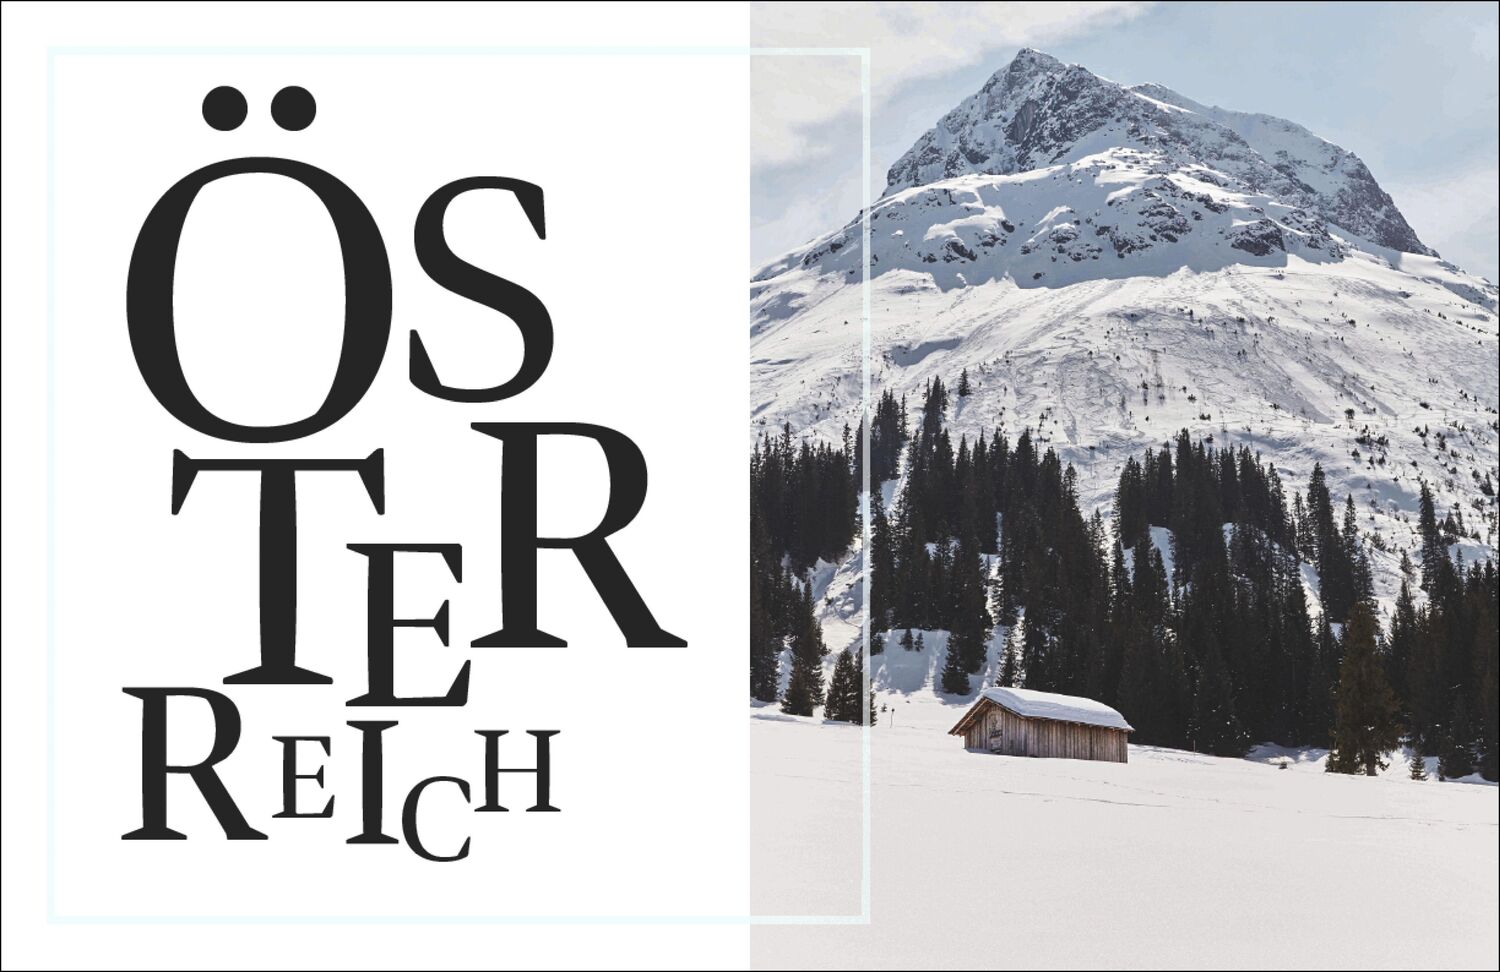 Bild: 9783791386560 | Alpen Kochbuch | Rezepte und Geschichten von Europas Gipfeln | Buch